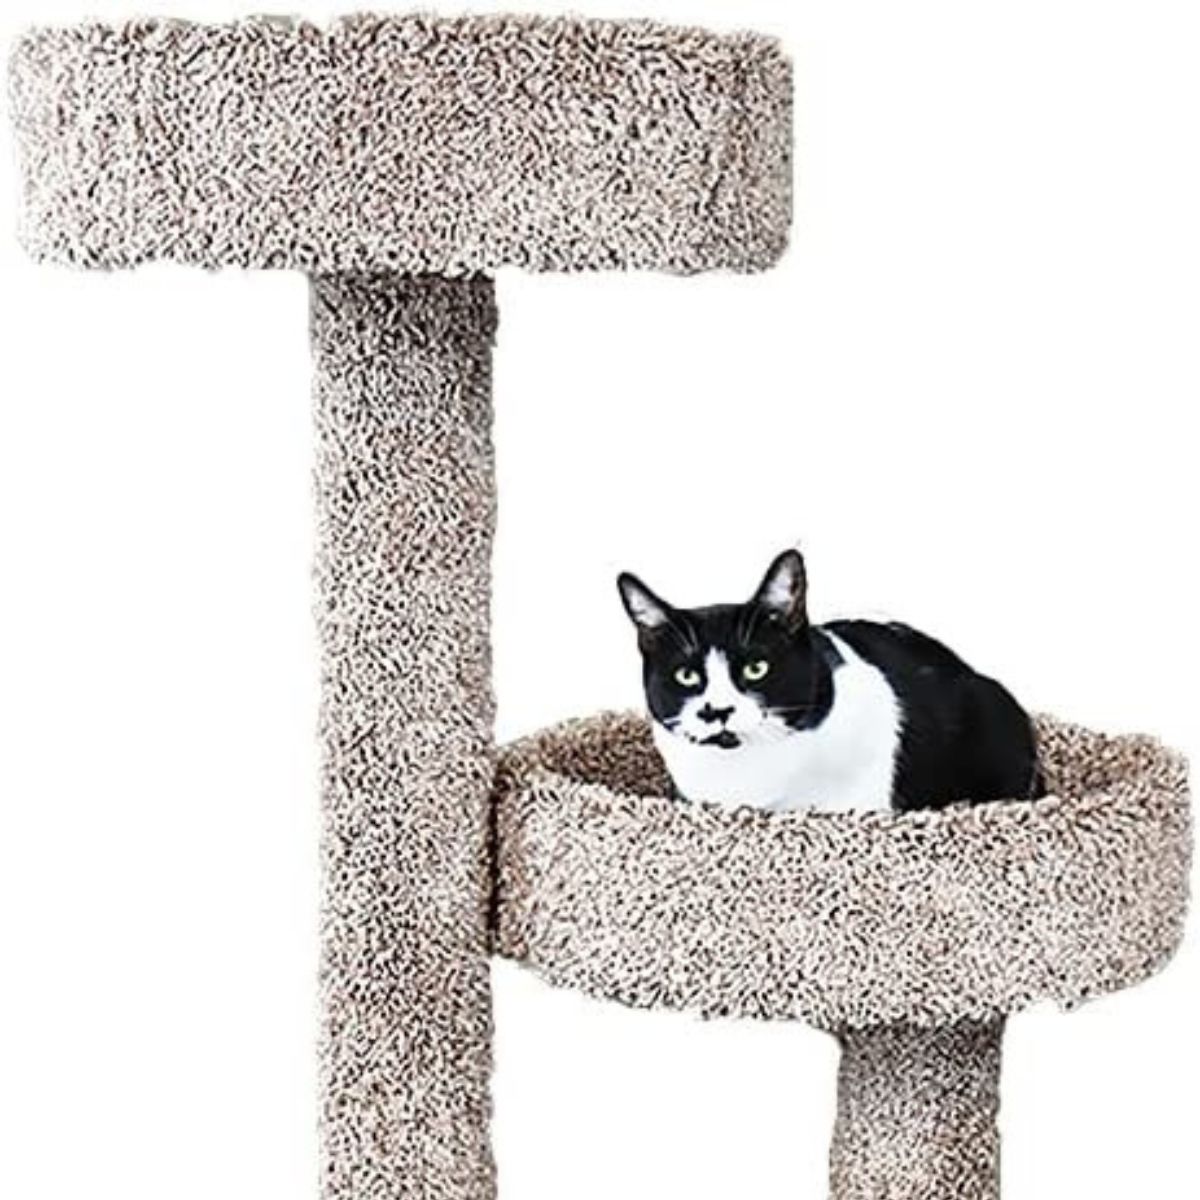 New Cat Condos Cat Tree